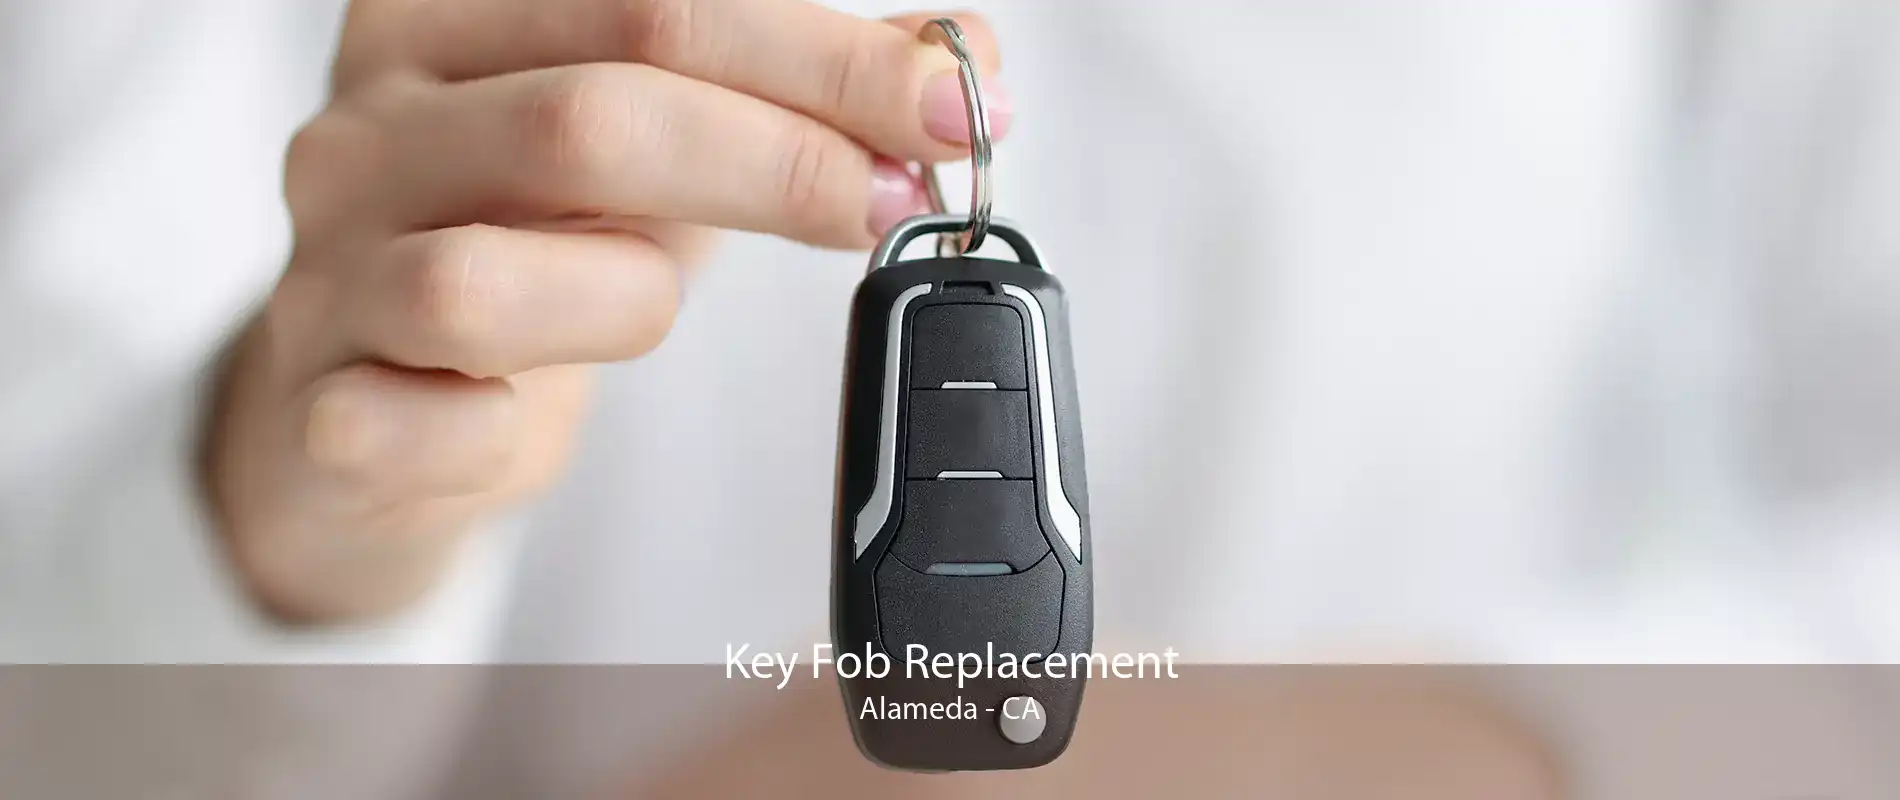 Key Fob Replacement Alameda - CA